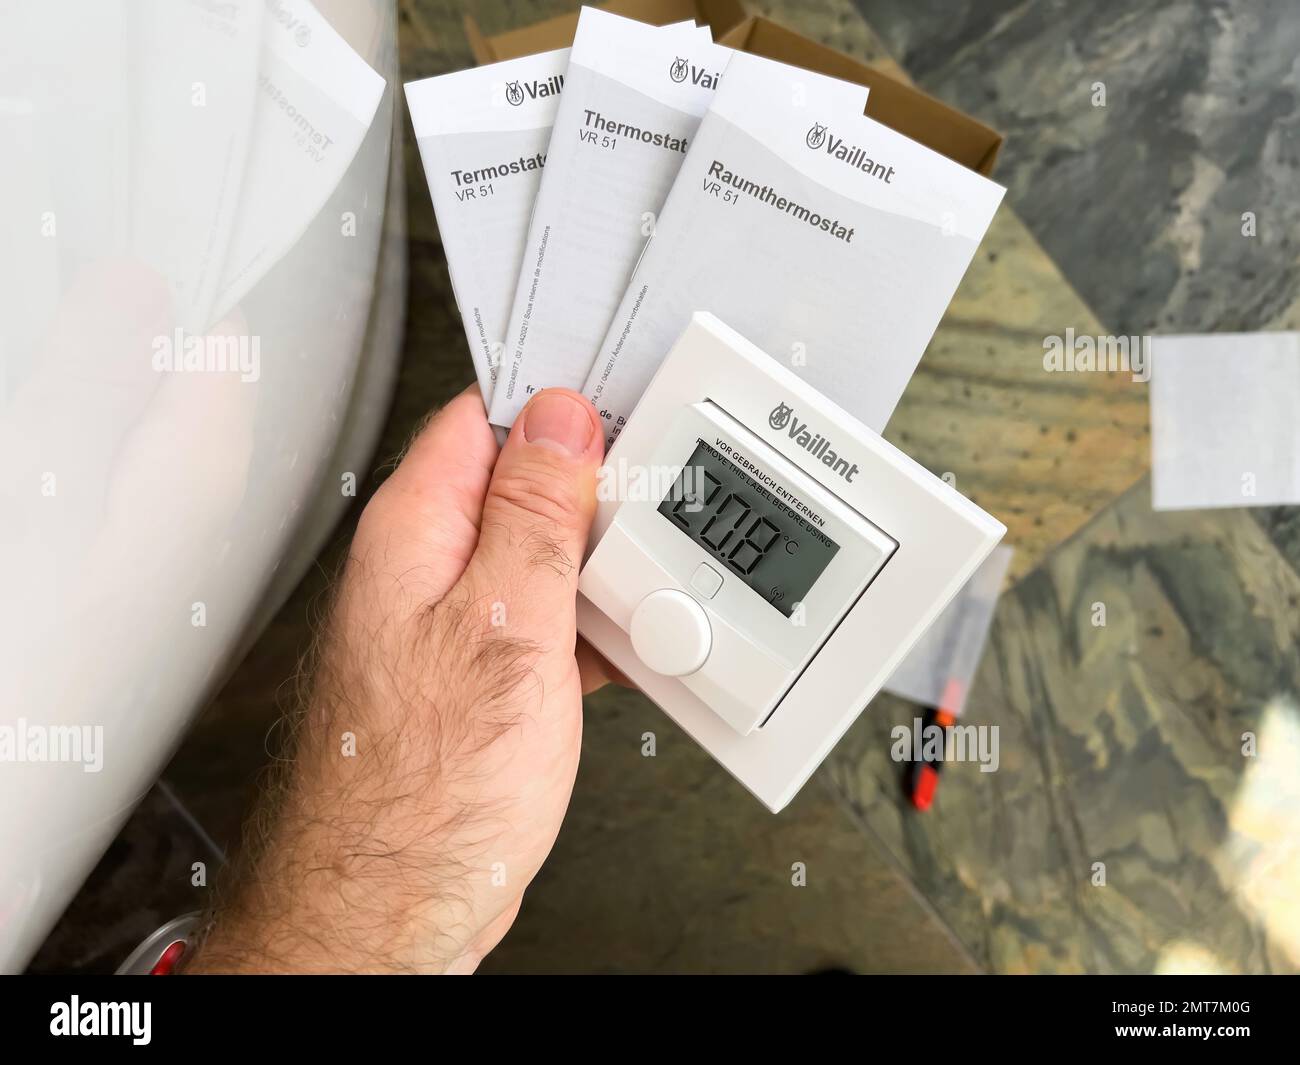 Paris, Francia - Oct 25, 2020: POV man mostrando dispositivos Vaillant IoT  dispositivo - VRC 700f termostato de compensación de tiempo, VR50 válvula  termostática y Ambisense VR51 termostato de habitación Fotografía de stock  - Alamy